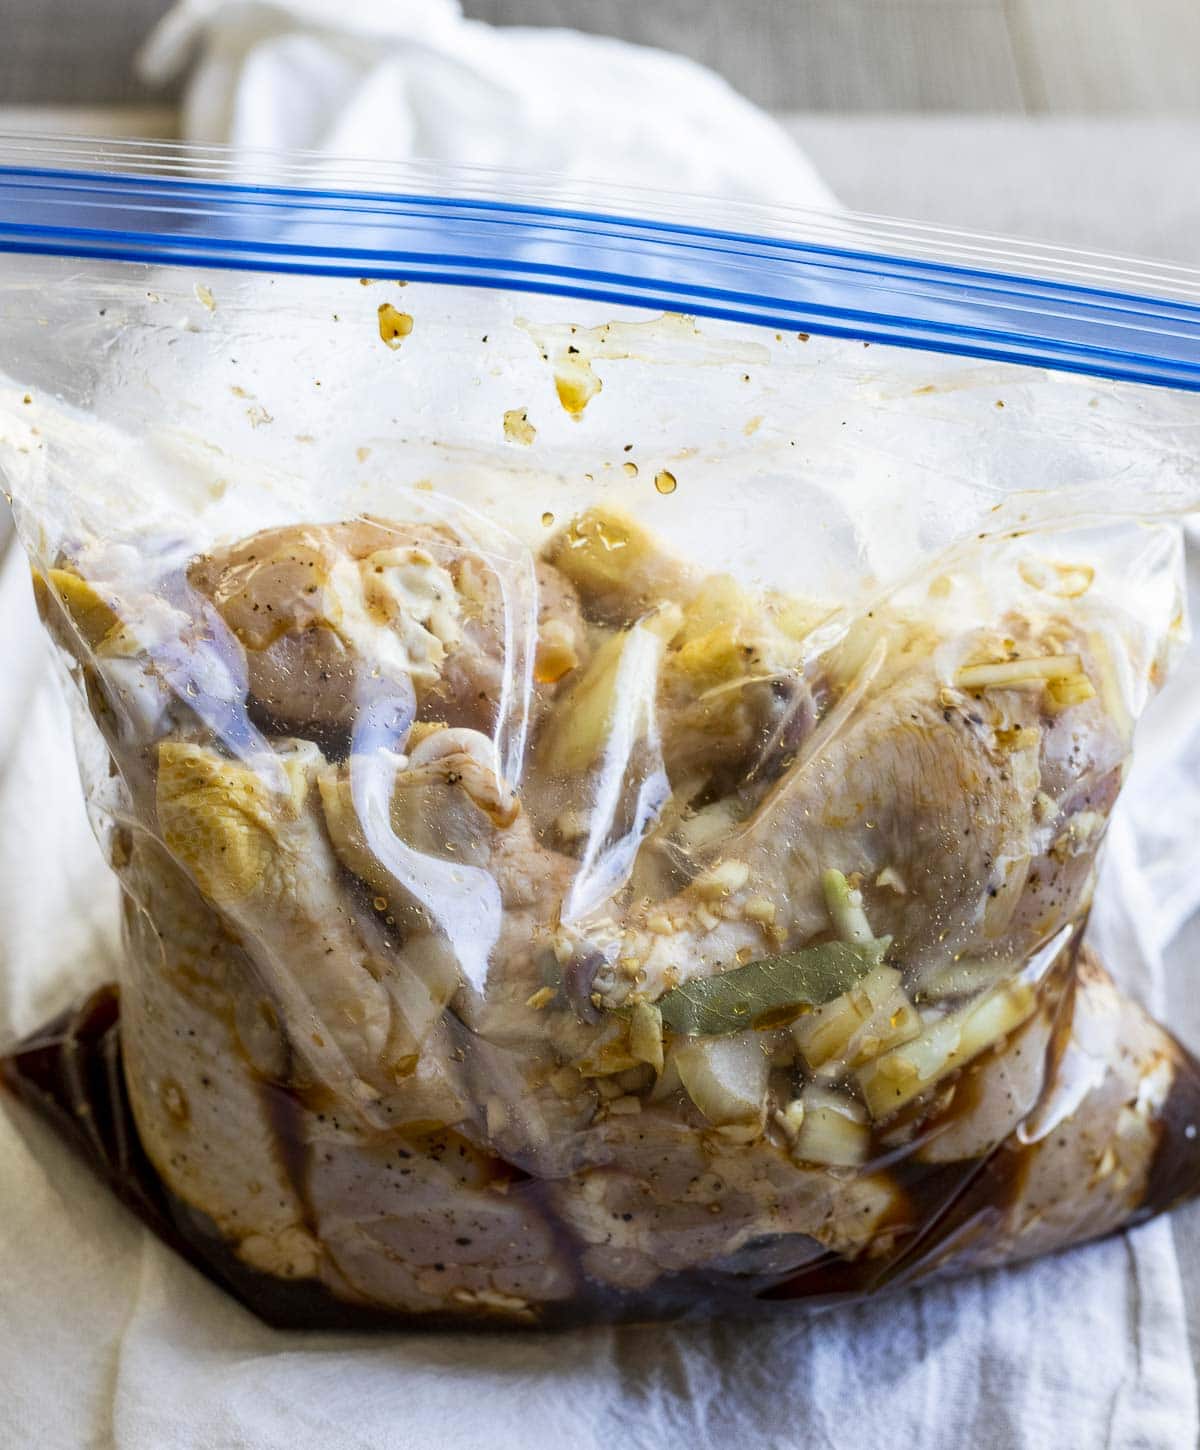 Marinated chicken drumsticks in a ziplock bag.